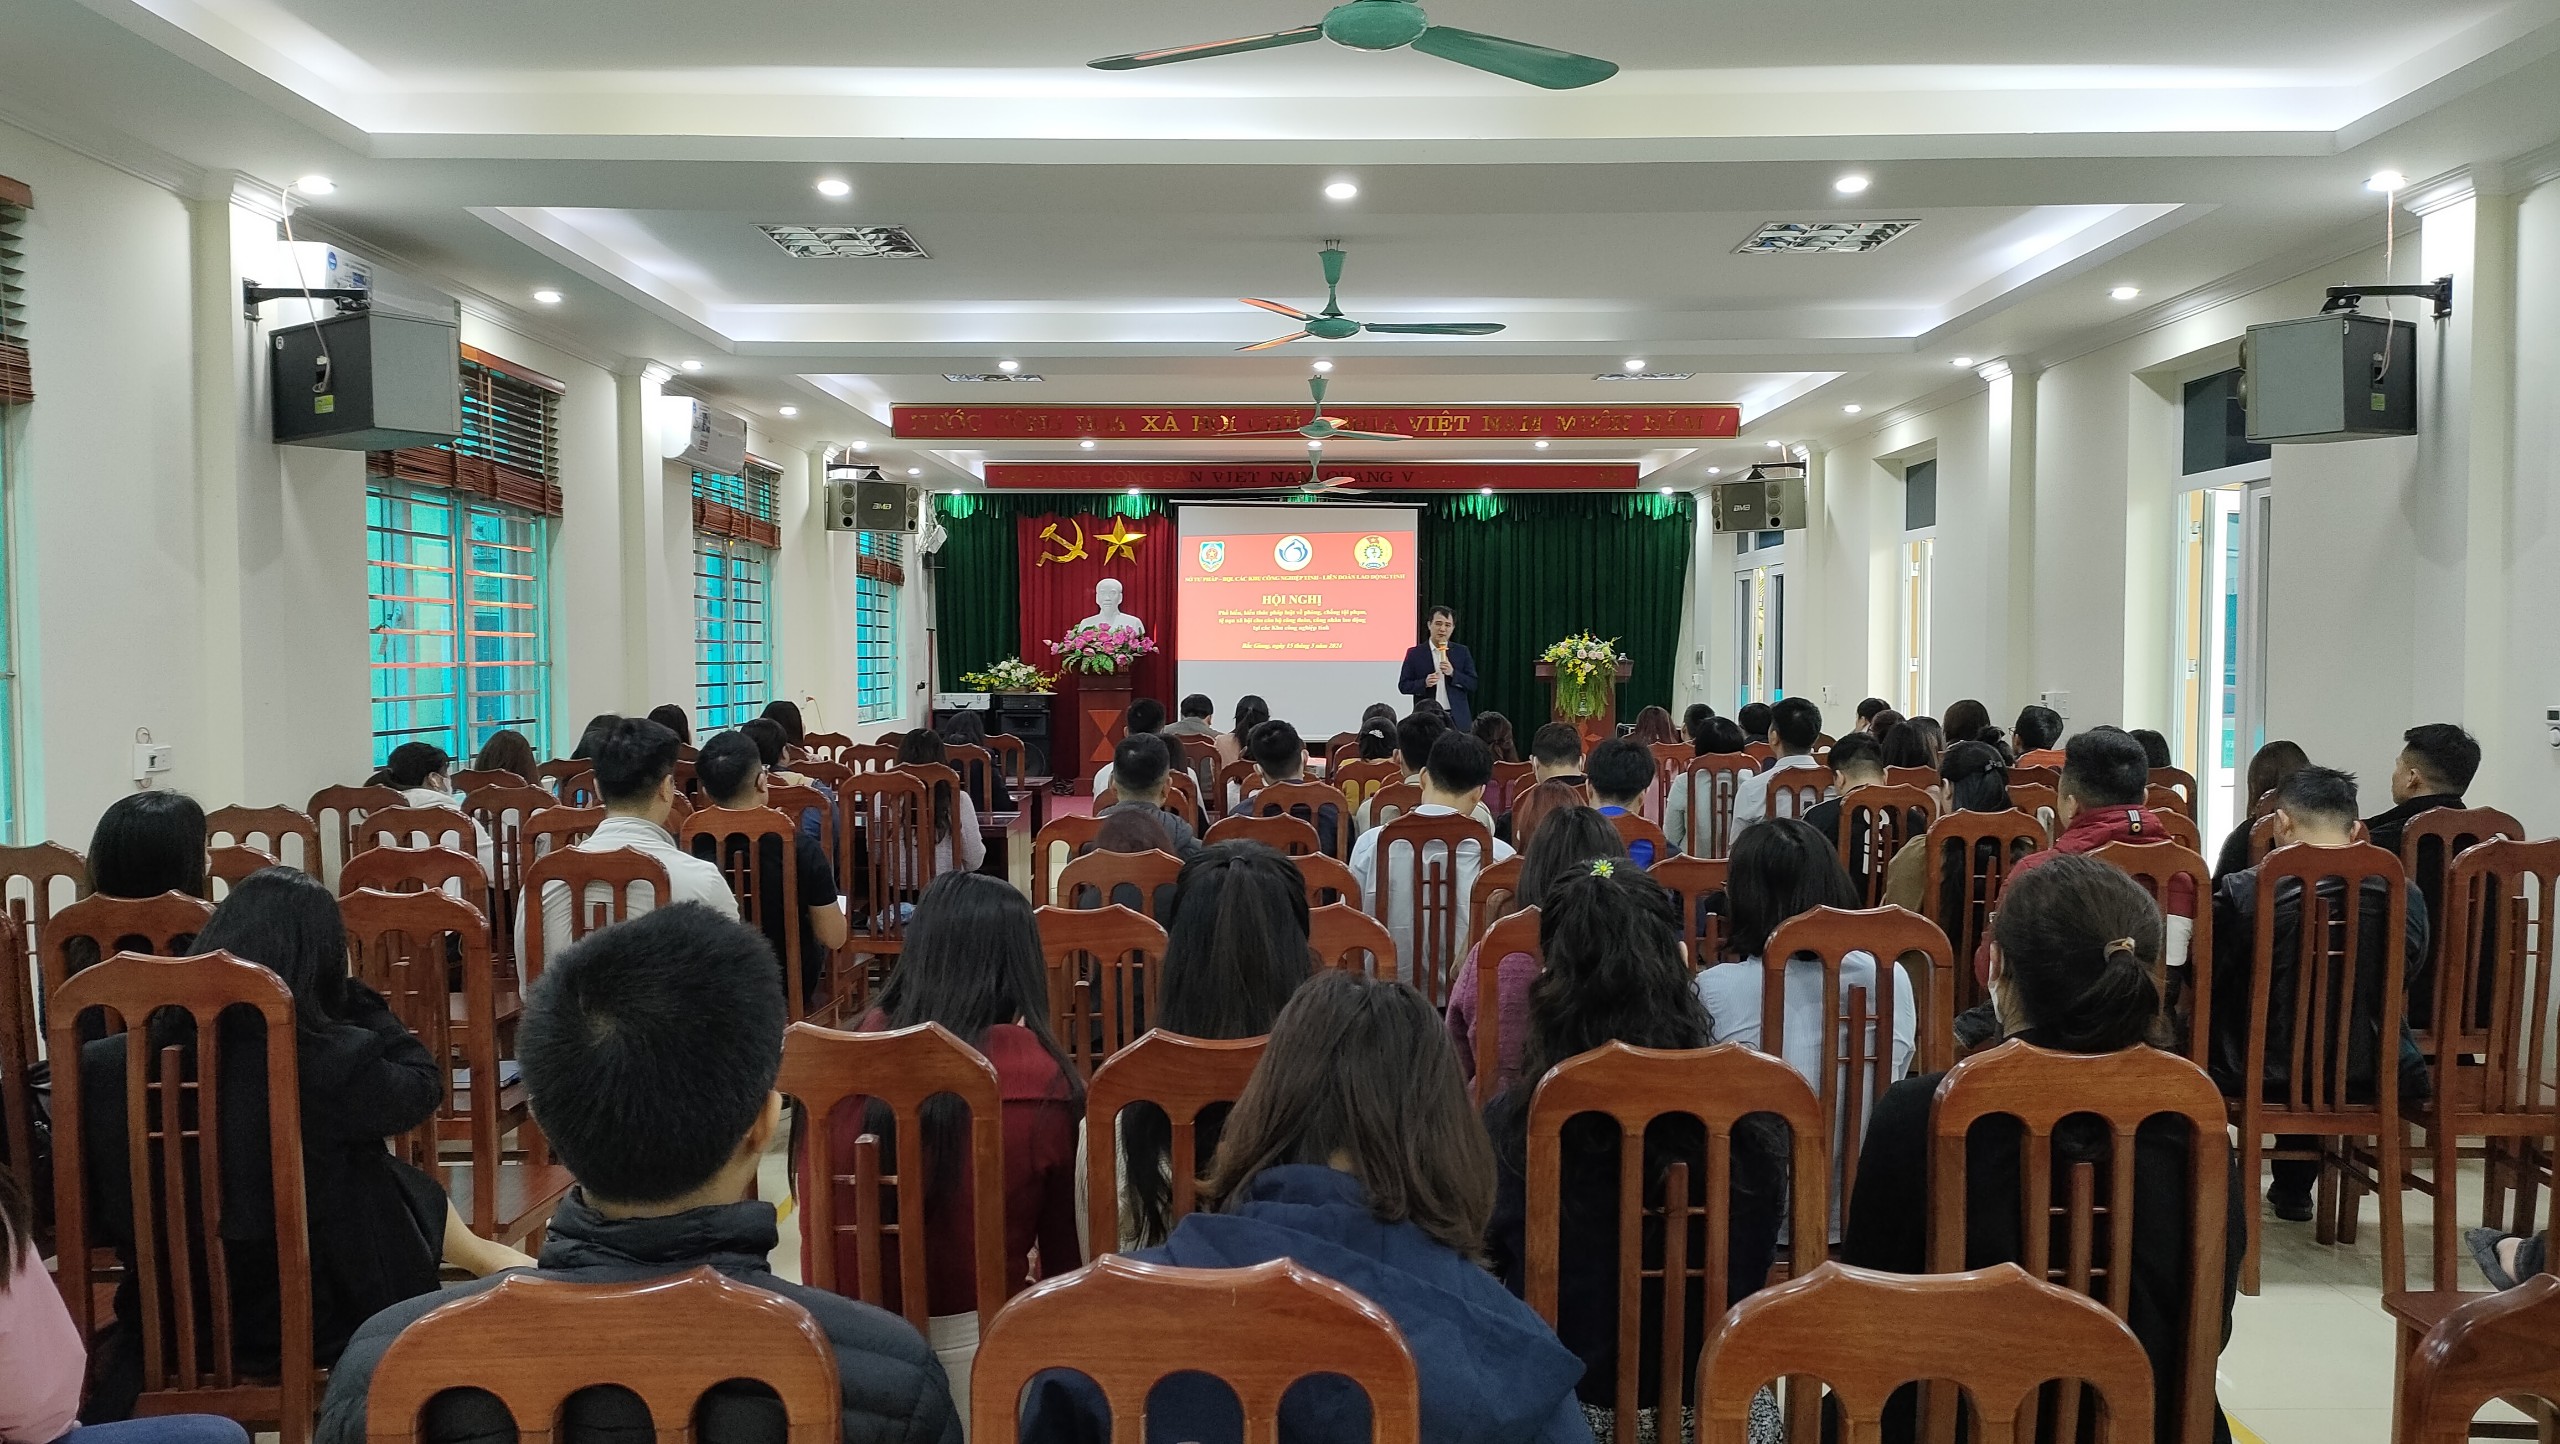 Hội nghị tuyên truyền, phổ biến về phòng, chống tội phạm, tệ nạn xã hội tại các Khu công nghiệp trên địa bàn tỉnh Bắc Giang|https://bqlkcn.bacgiang.gov.vn/en_GB/chi-tiet-tin-tuc/-/asset_publisher/xme8LCPEx4VA/content/hoi-nghi-tuyen-truyen-pho-bien-ve-phong-chong-toi-pham-te-nan-xa-hoi-tai-cac-khu-cong-nghiep-tren-ia-ban-tinh-bac-giang